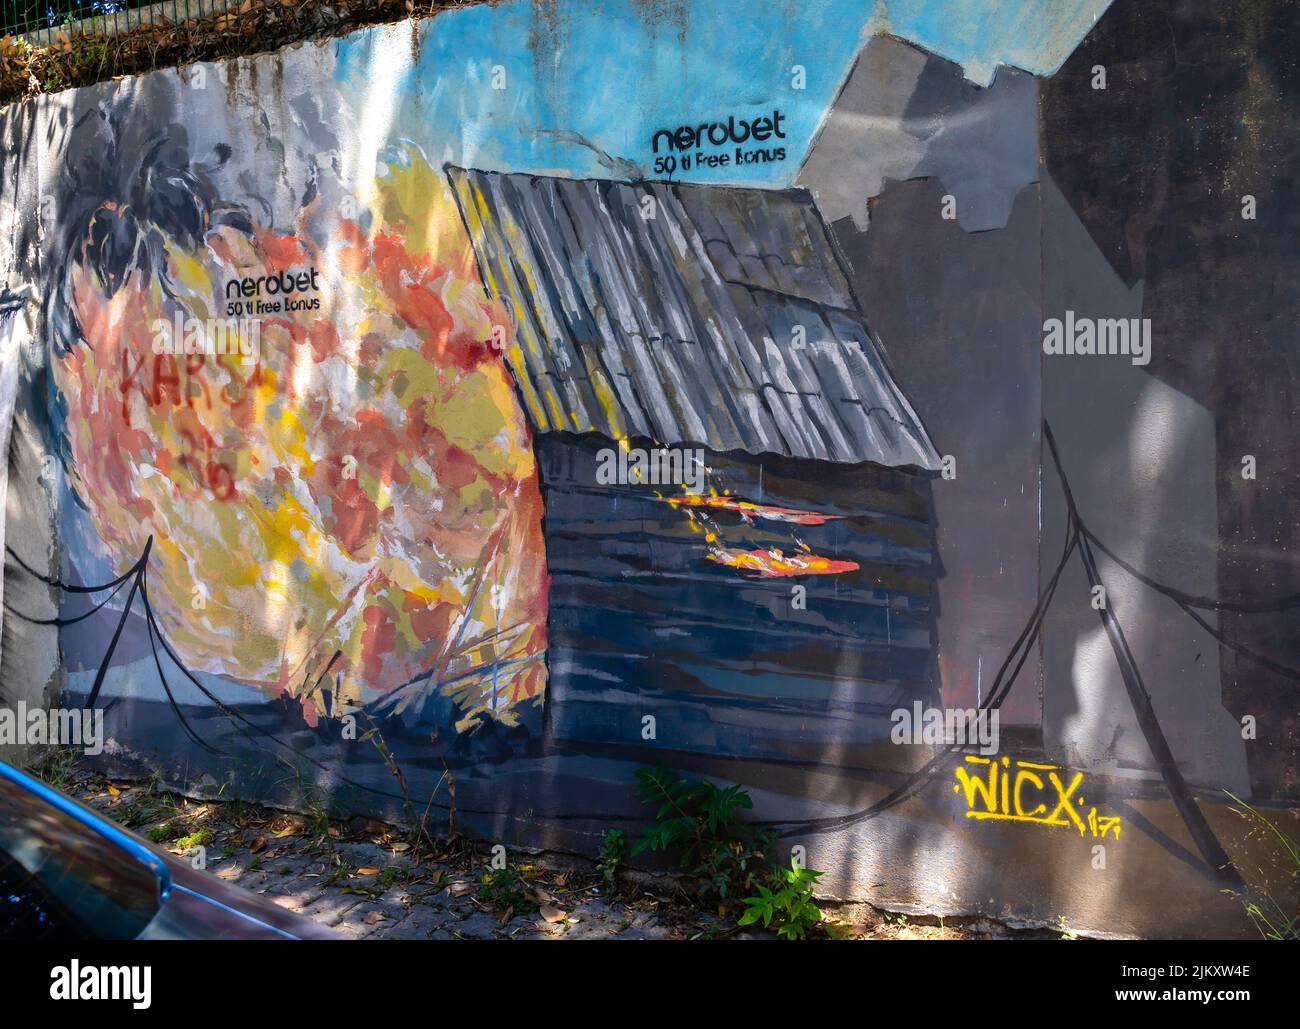 Arte callejero, mural de Wicx que representa la casa en llamas en Moda, Kadiköy distrito de Estambul, Turquía Foto de stock